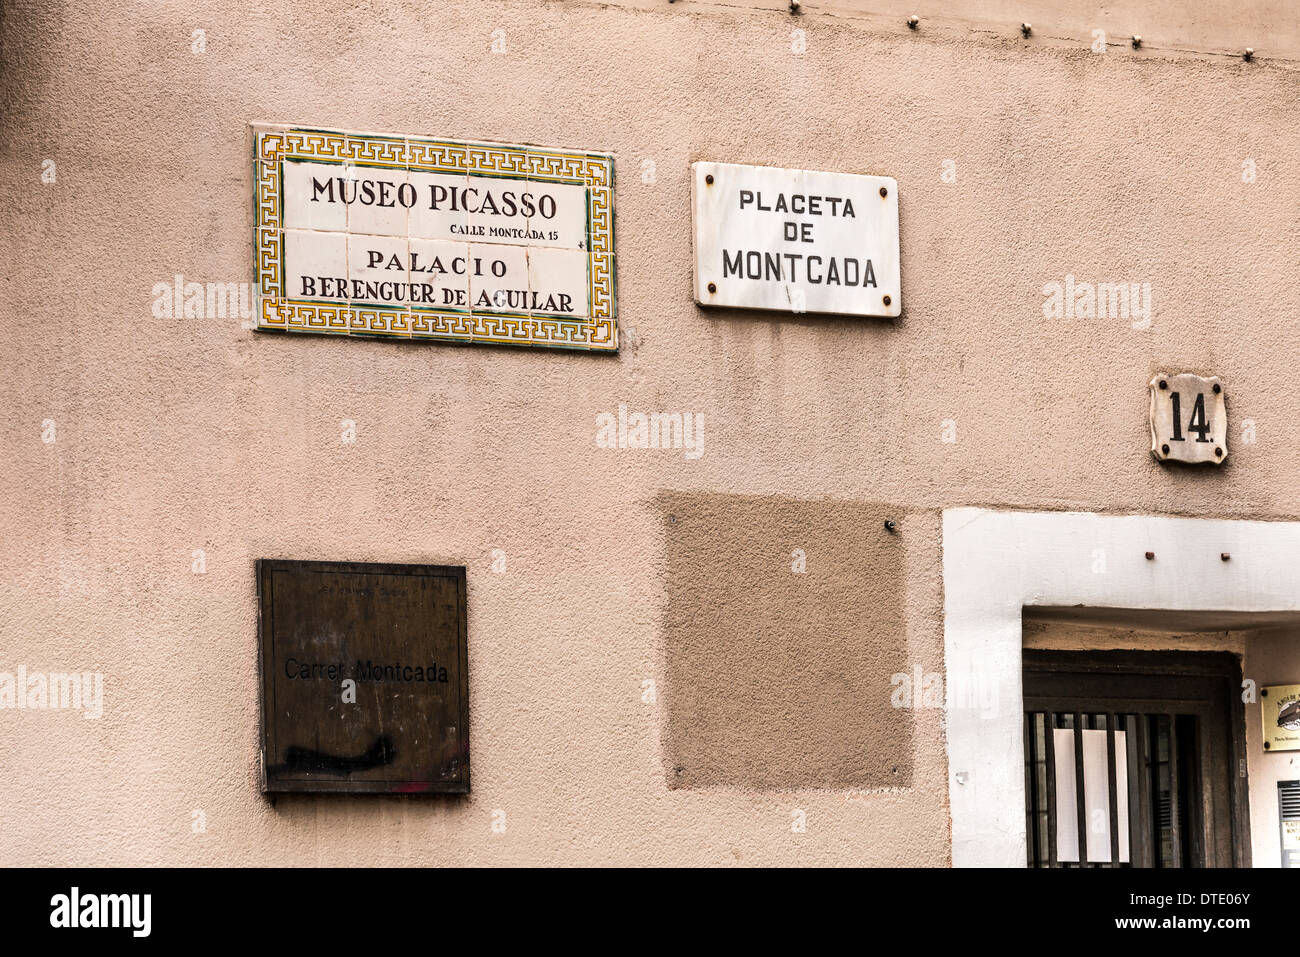 L'Europe, Espagne, Barcelone, quartier Born, promenade touristique, cité médiévale, près de Sta.Maria del Mar et le musée Picasso. Banque D'Images